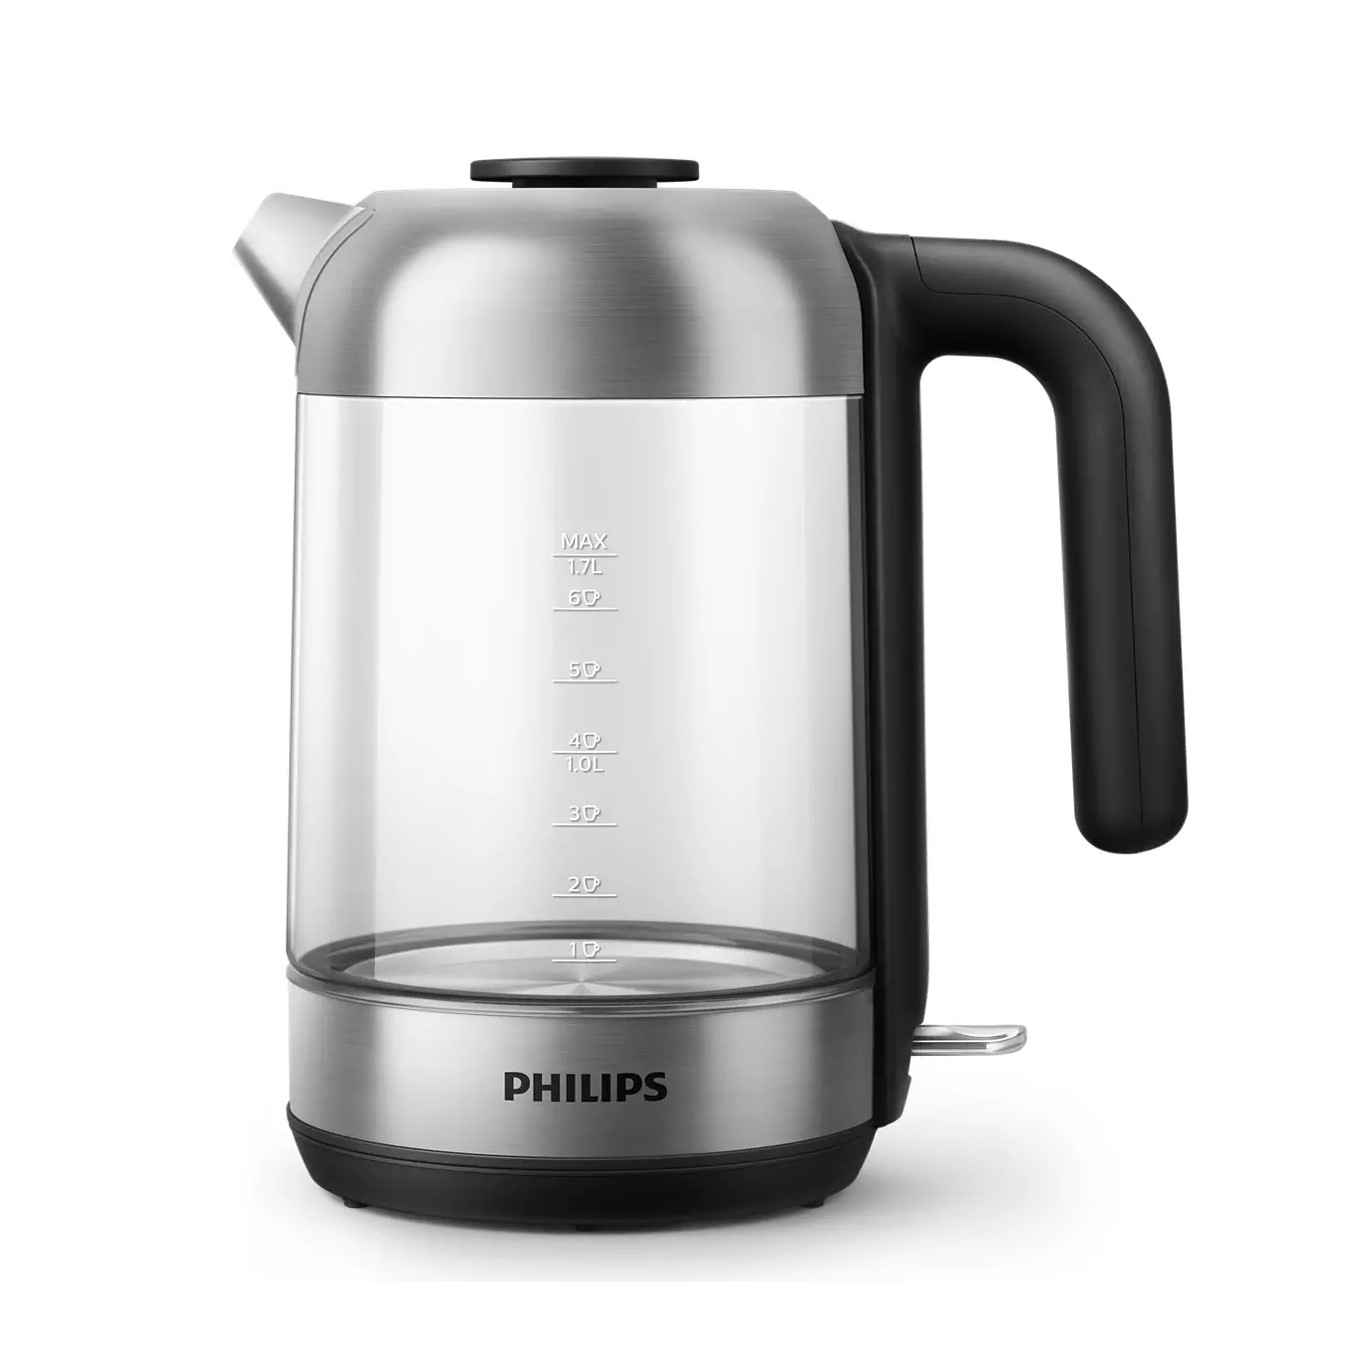 Philips Domestic Appliances hd933980 cocina 1.7 litros acero inoxidable negro y plateado hervidor s5000 2200 w hd9339 con sistema de auto apagado 1.7l 2200w